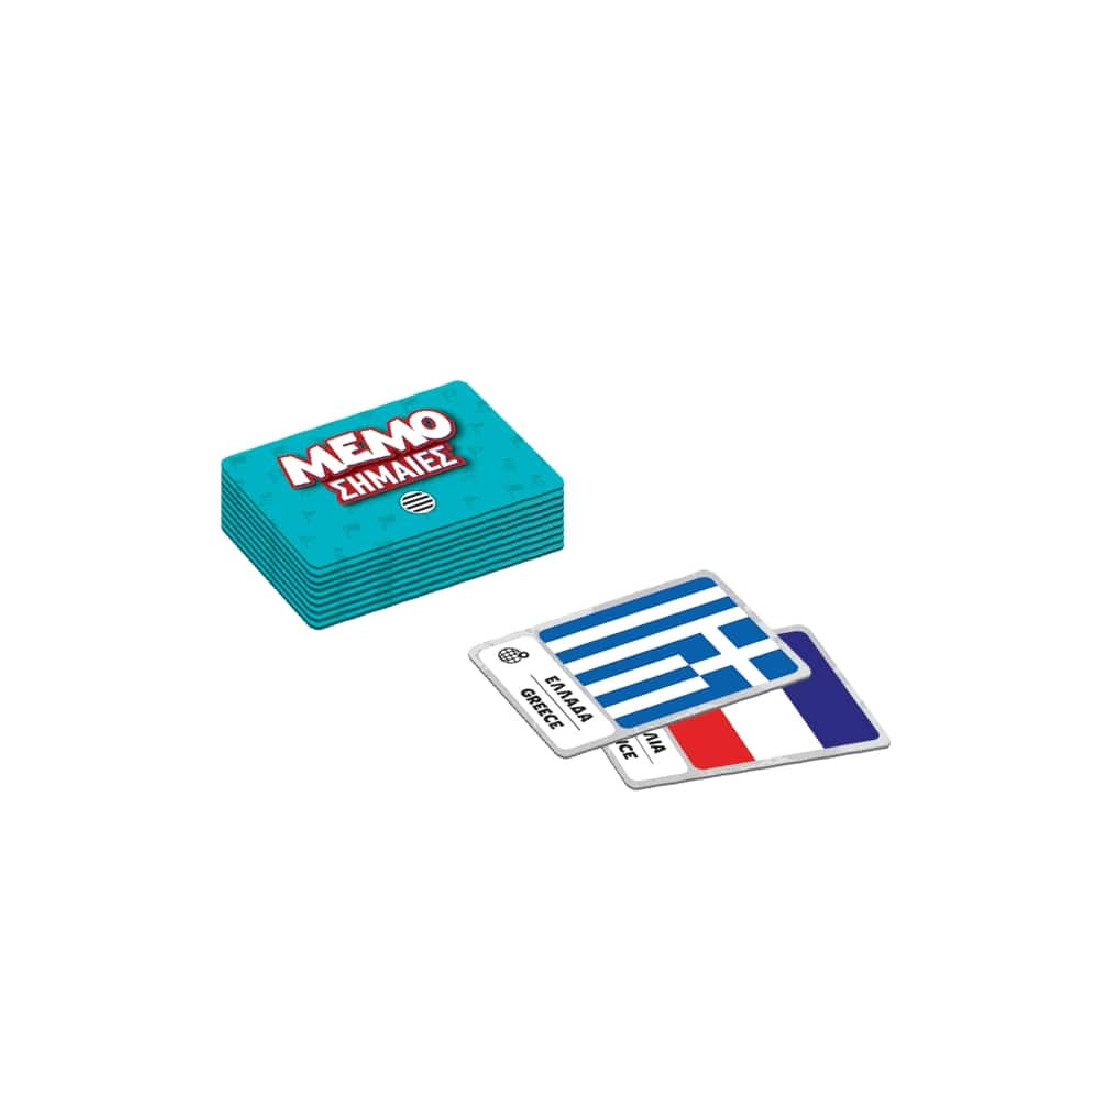 Παιχνίδι με κάρτες Memo Σημαίες 100796 Δεσύλλας